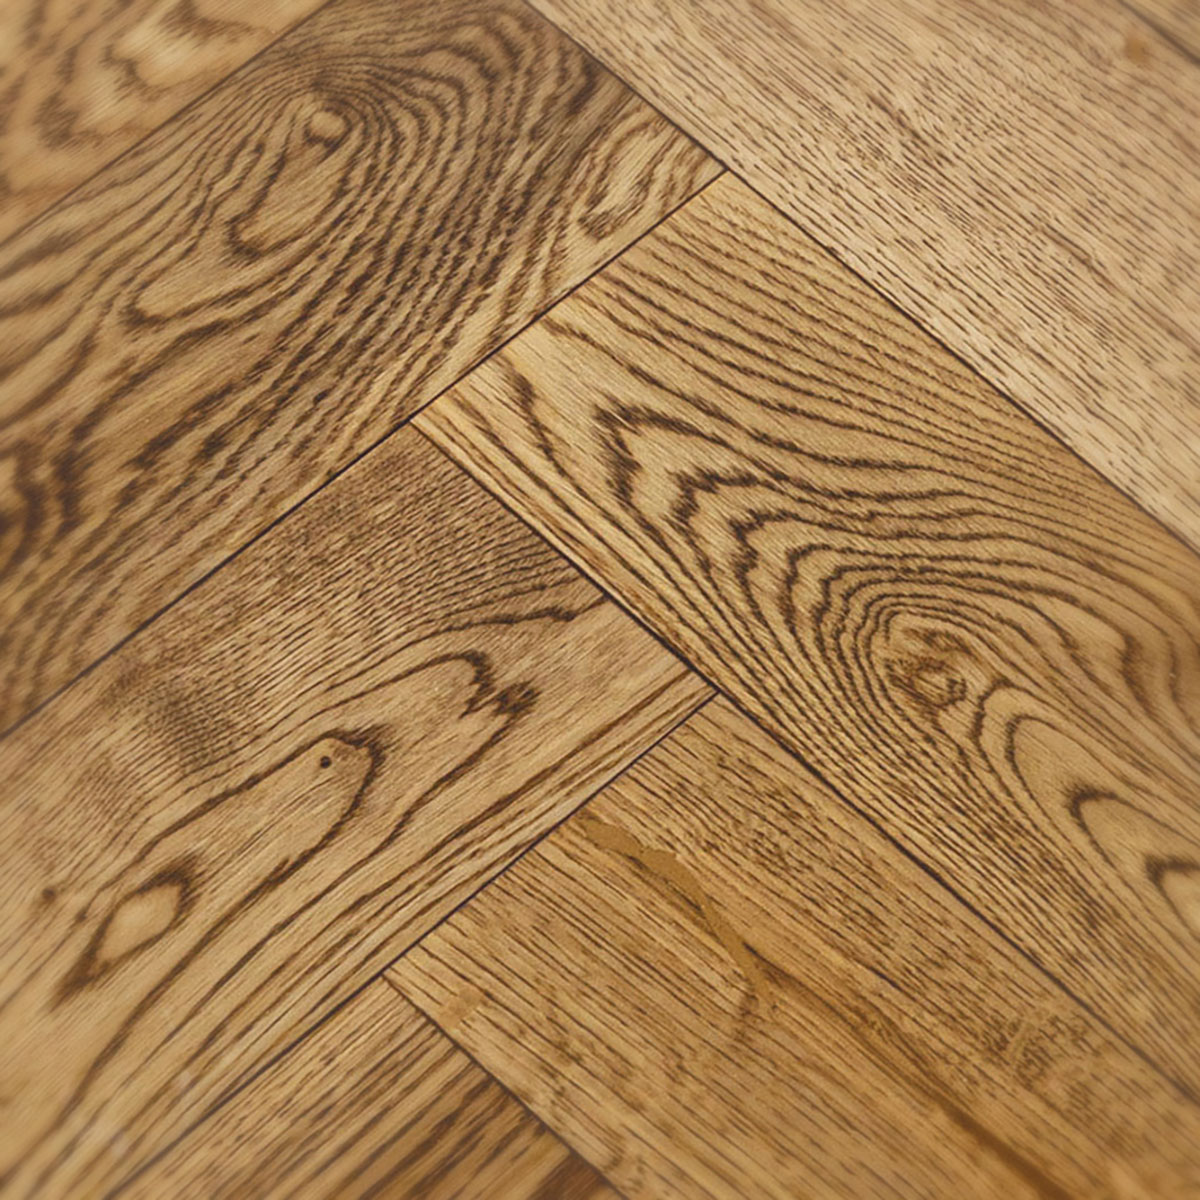 Ruskin Close Herringbone - Golden Oak Wood Floor